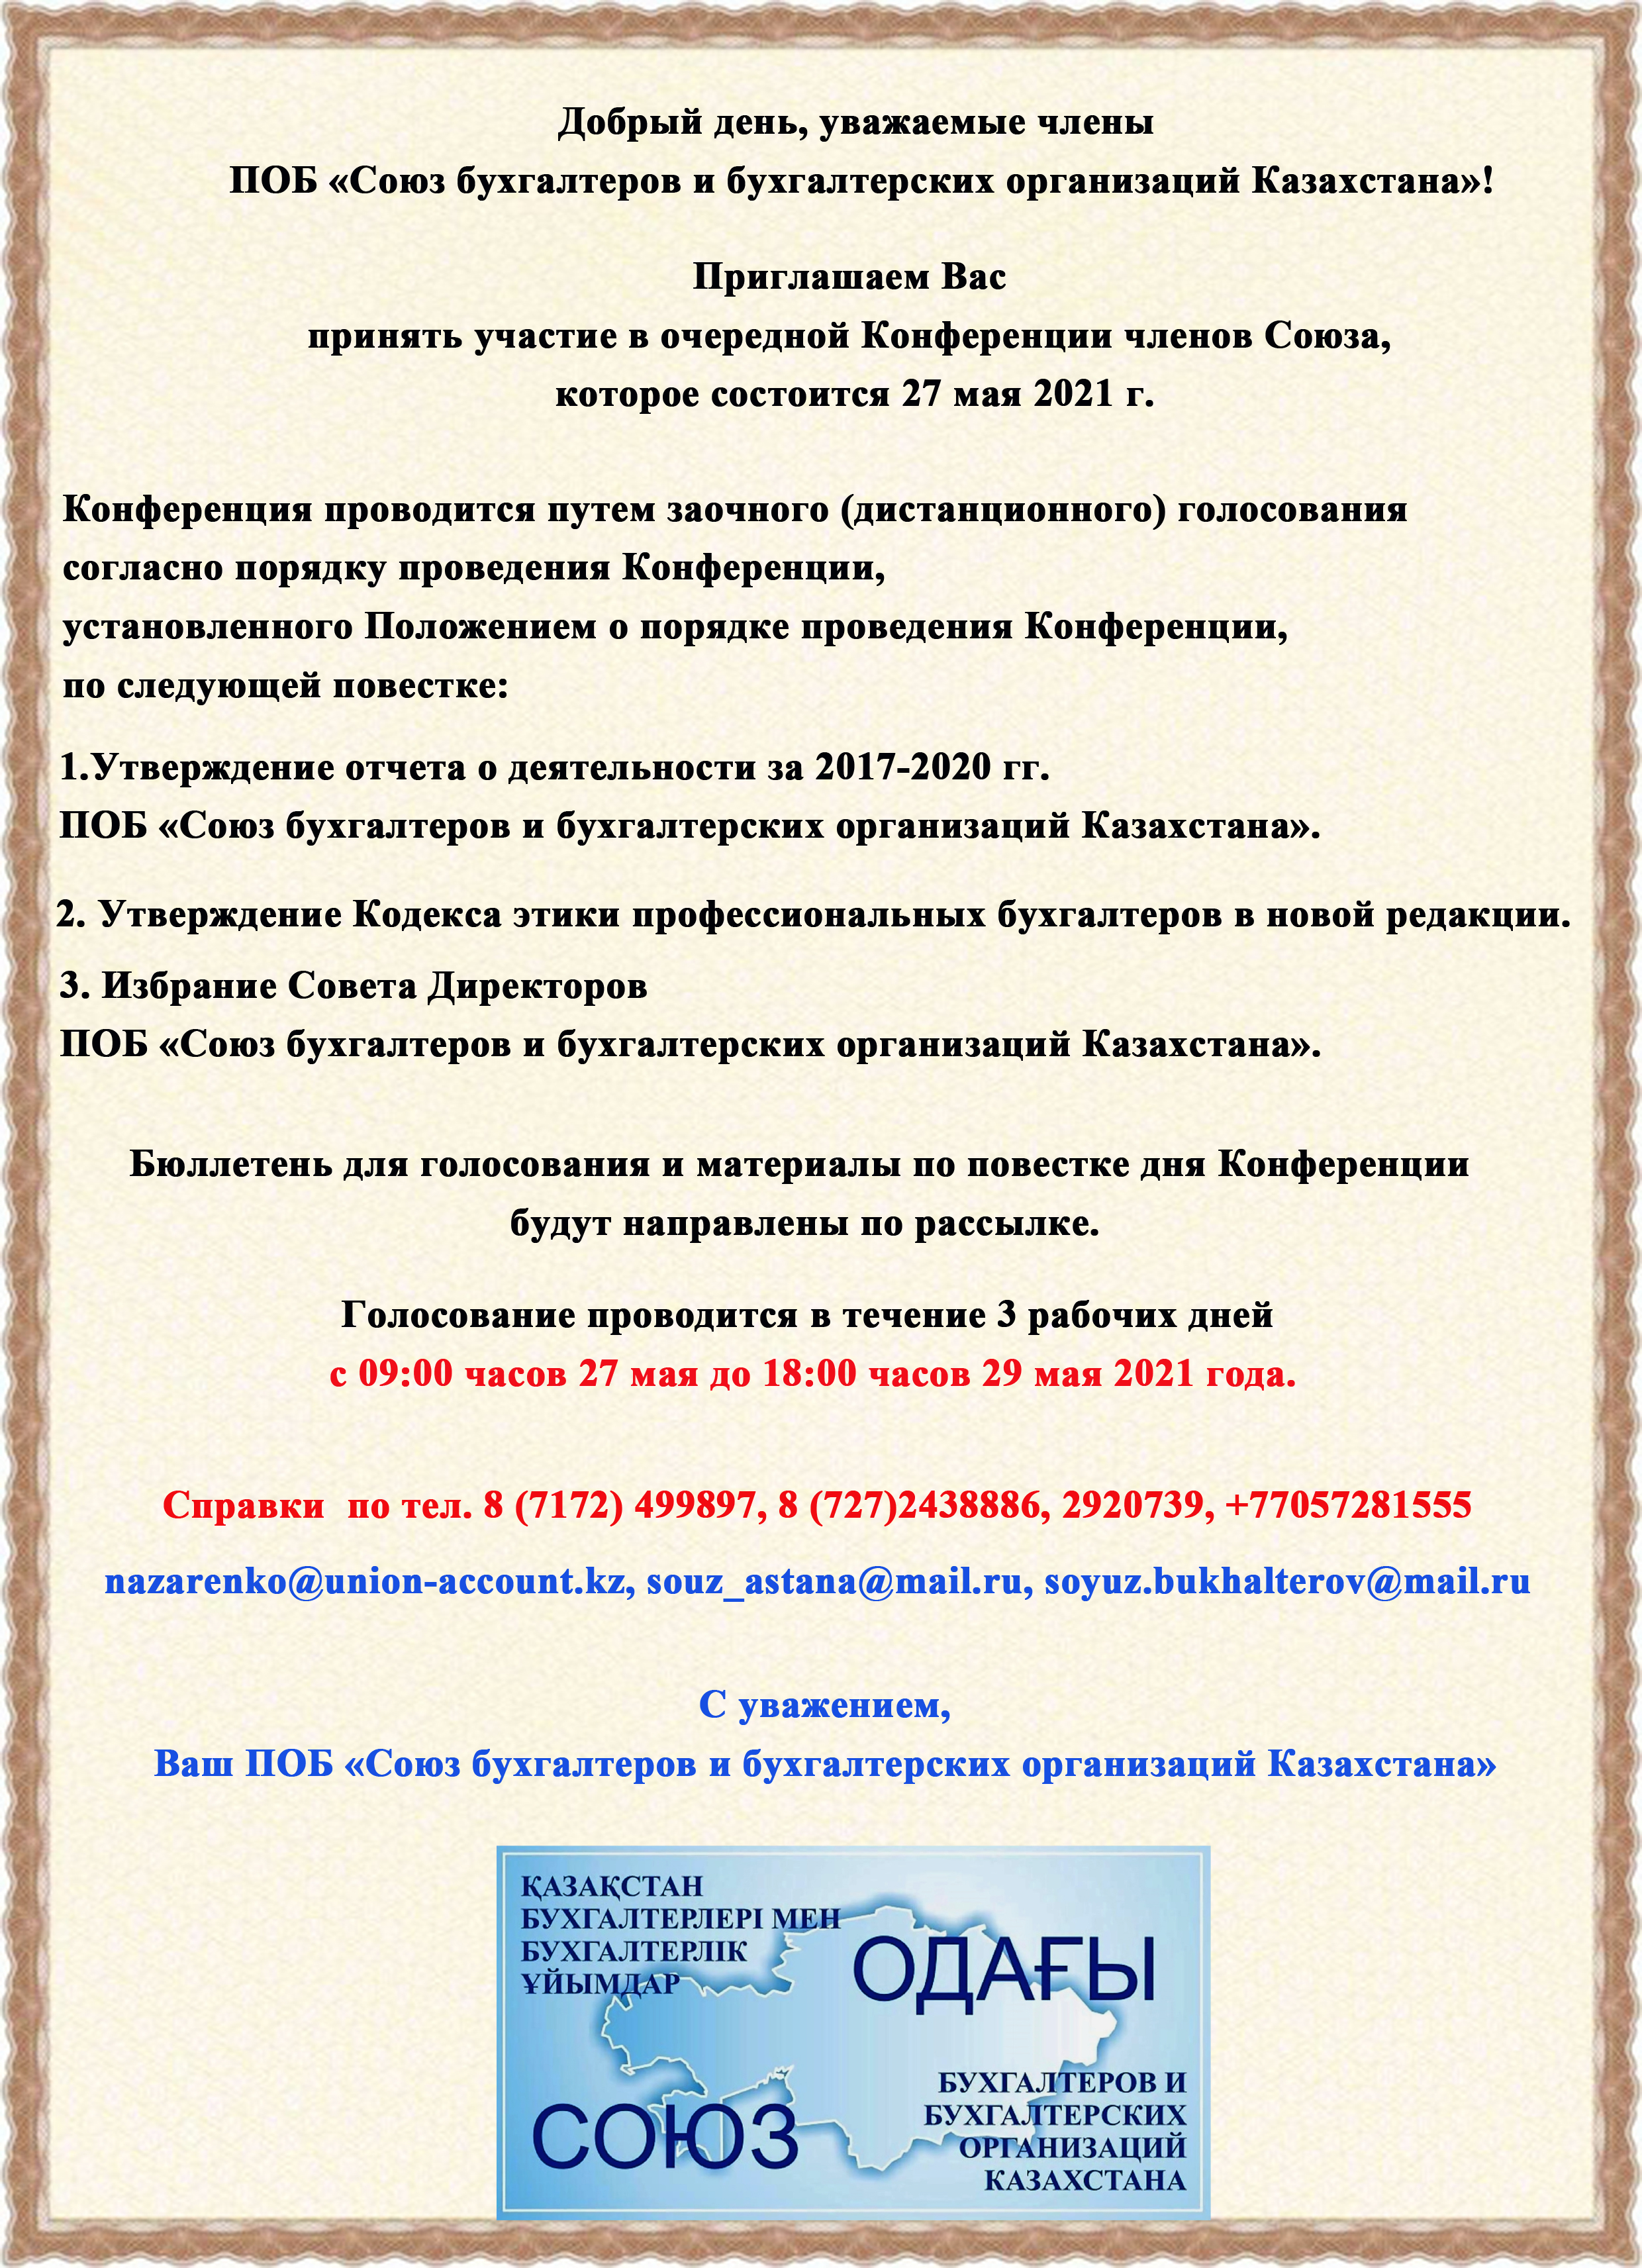 Добрый день, уважаемые члены ПОБ «Союз бухгалтеров и бухгалтерских организаций Казахстана»!